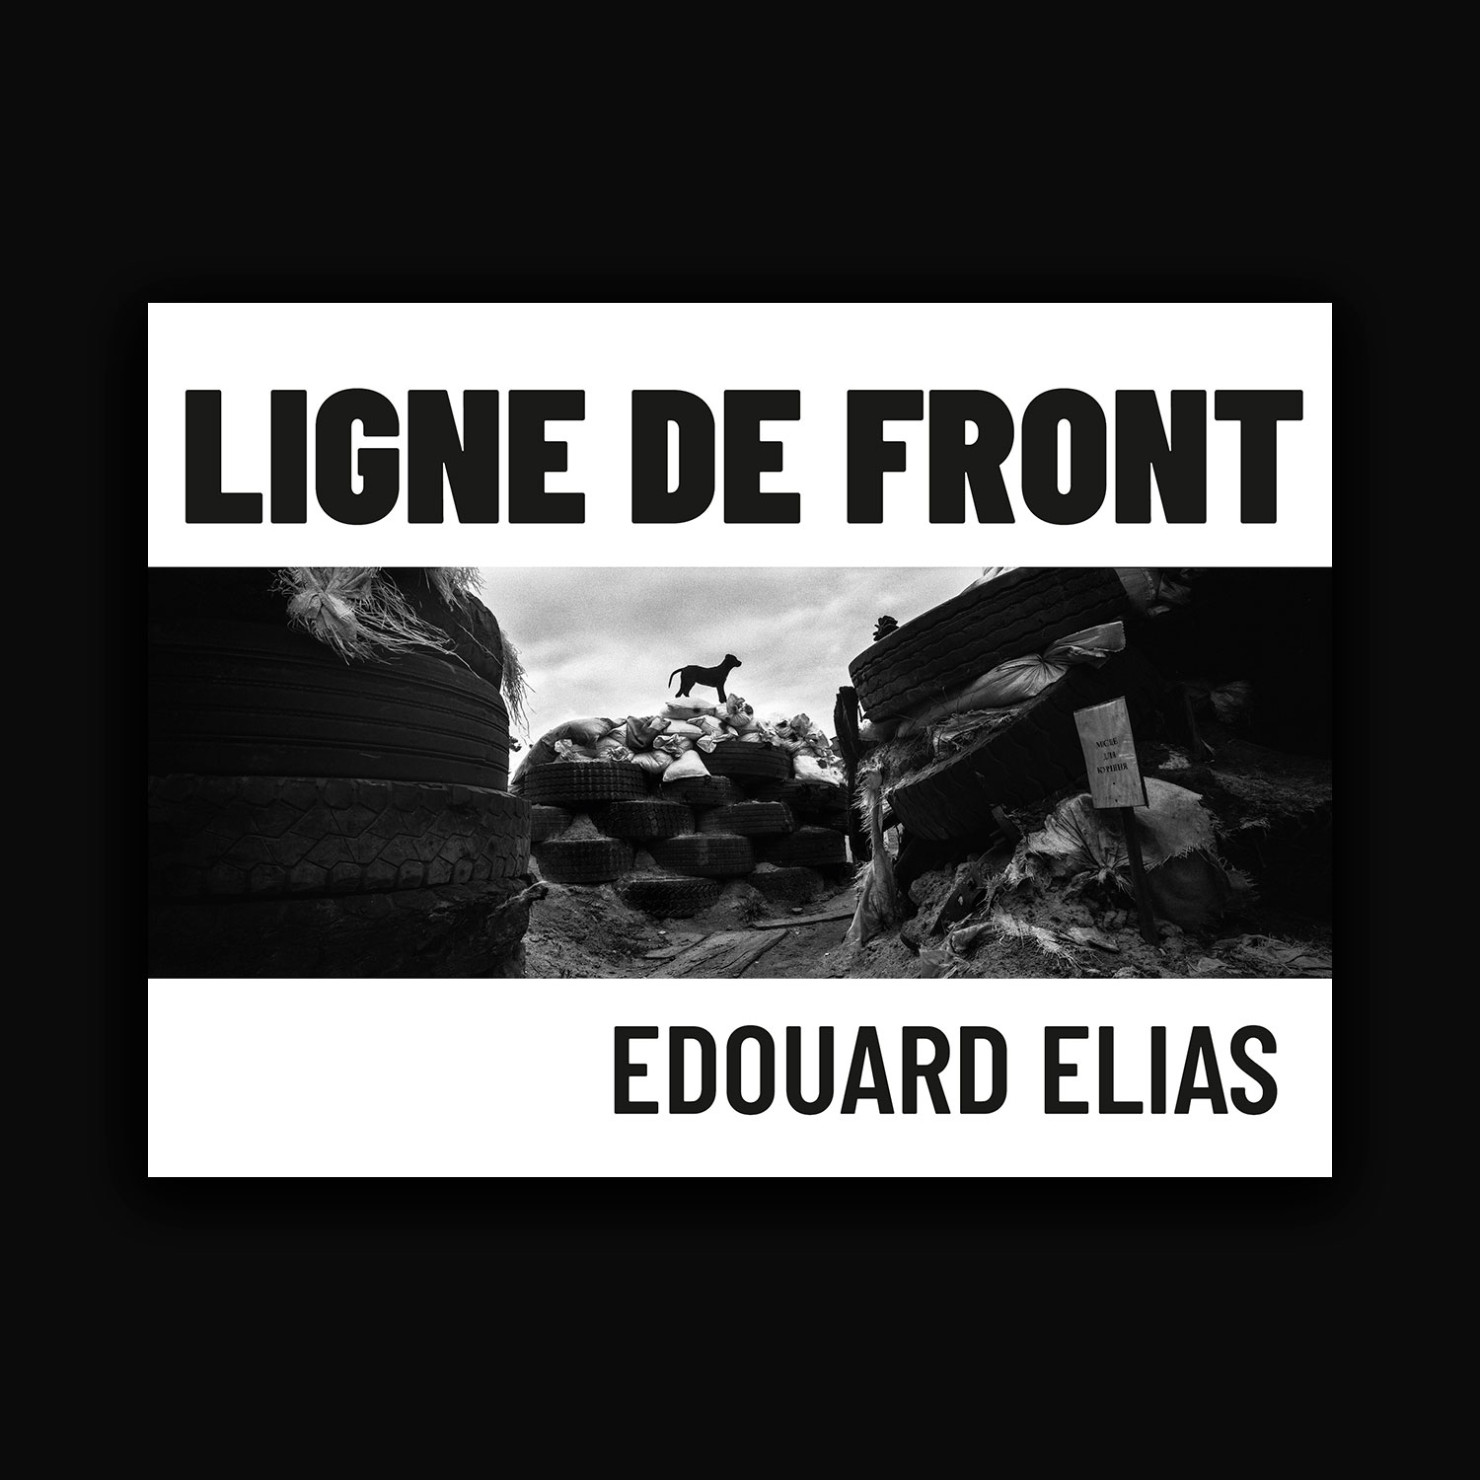 Ligne de front - Edouard Elias - photographic book